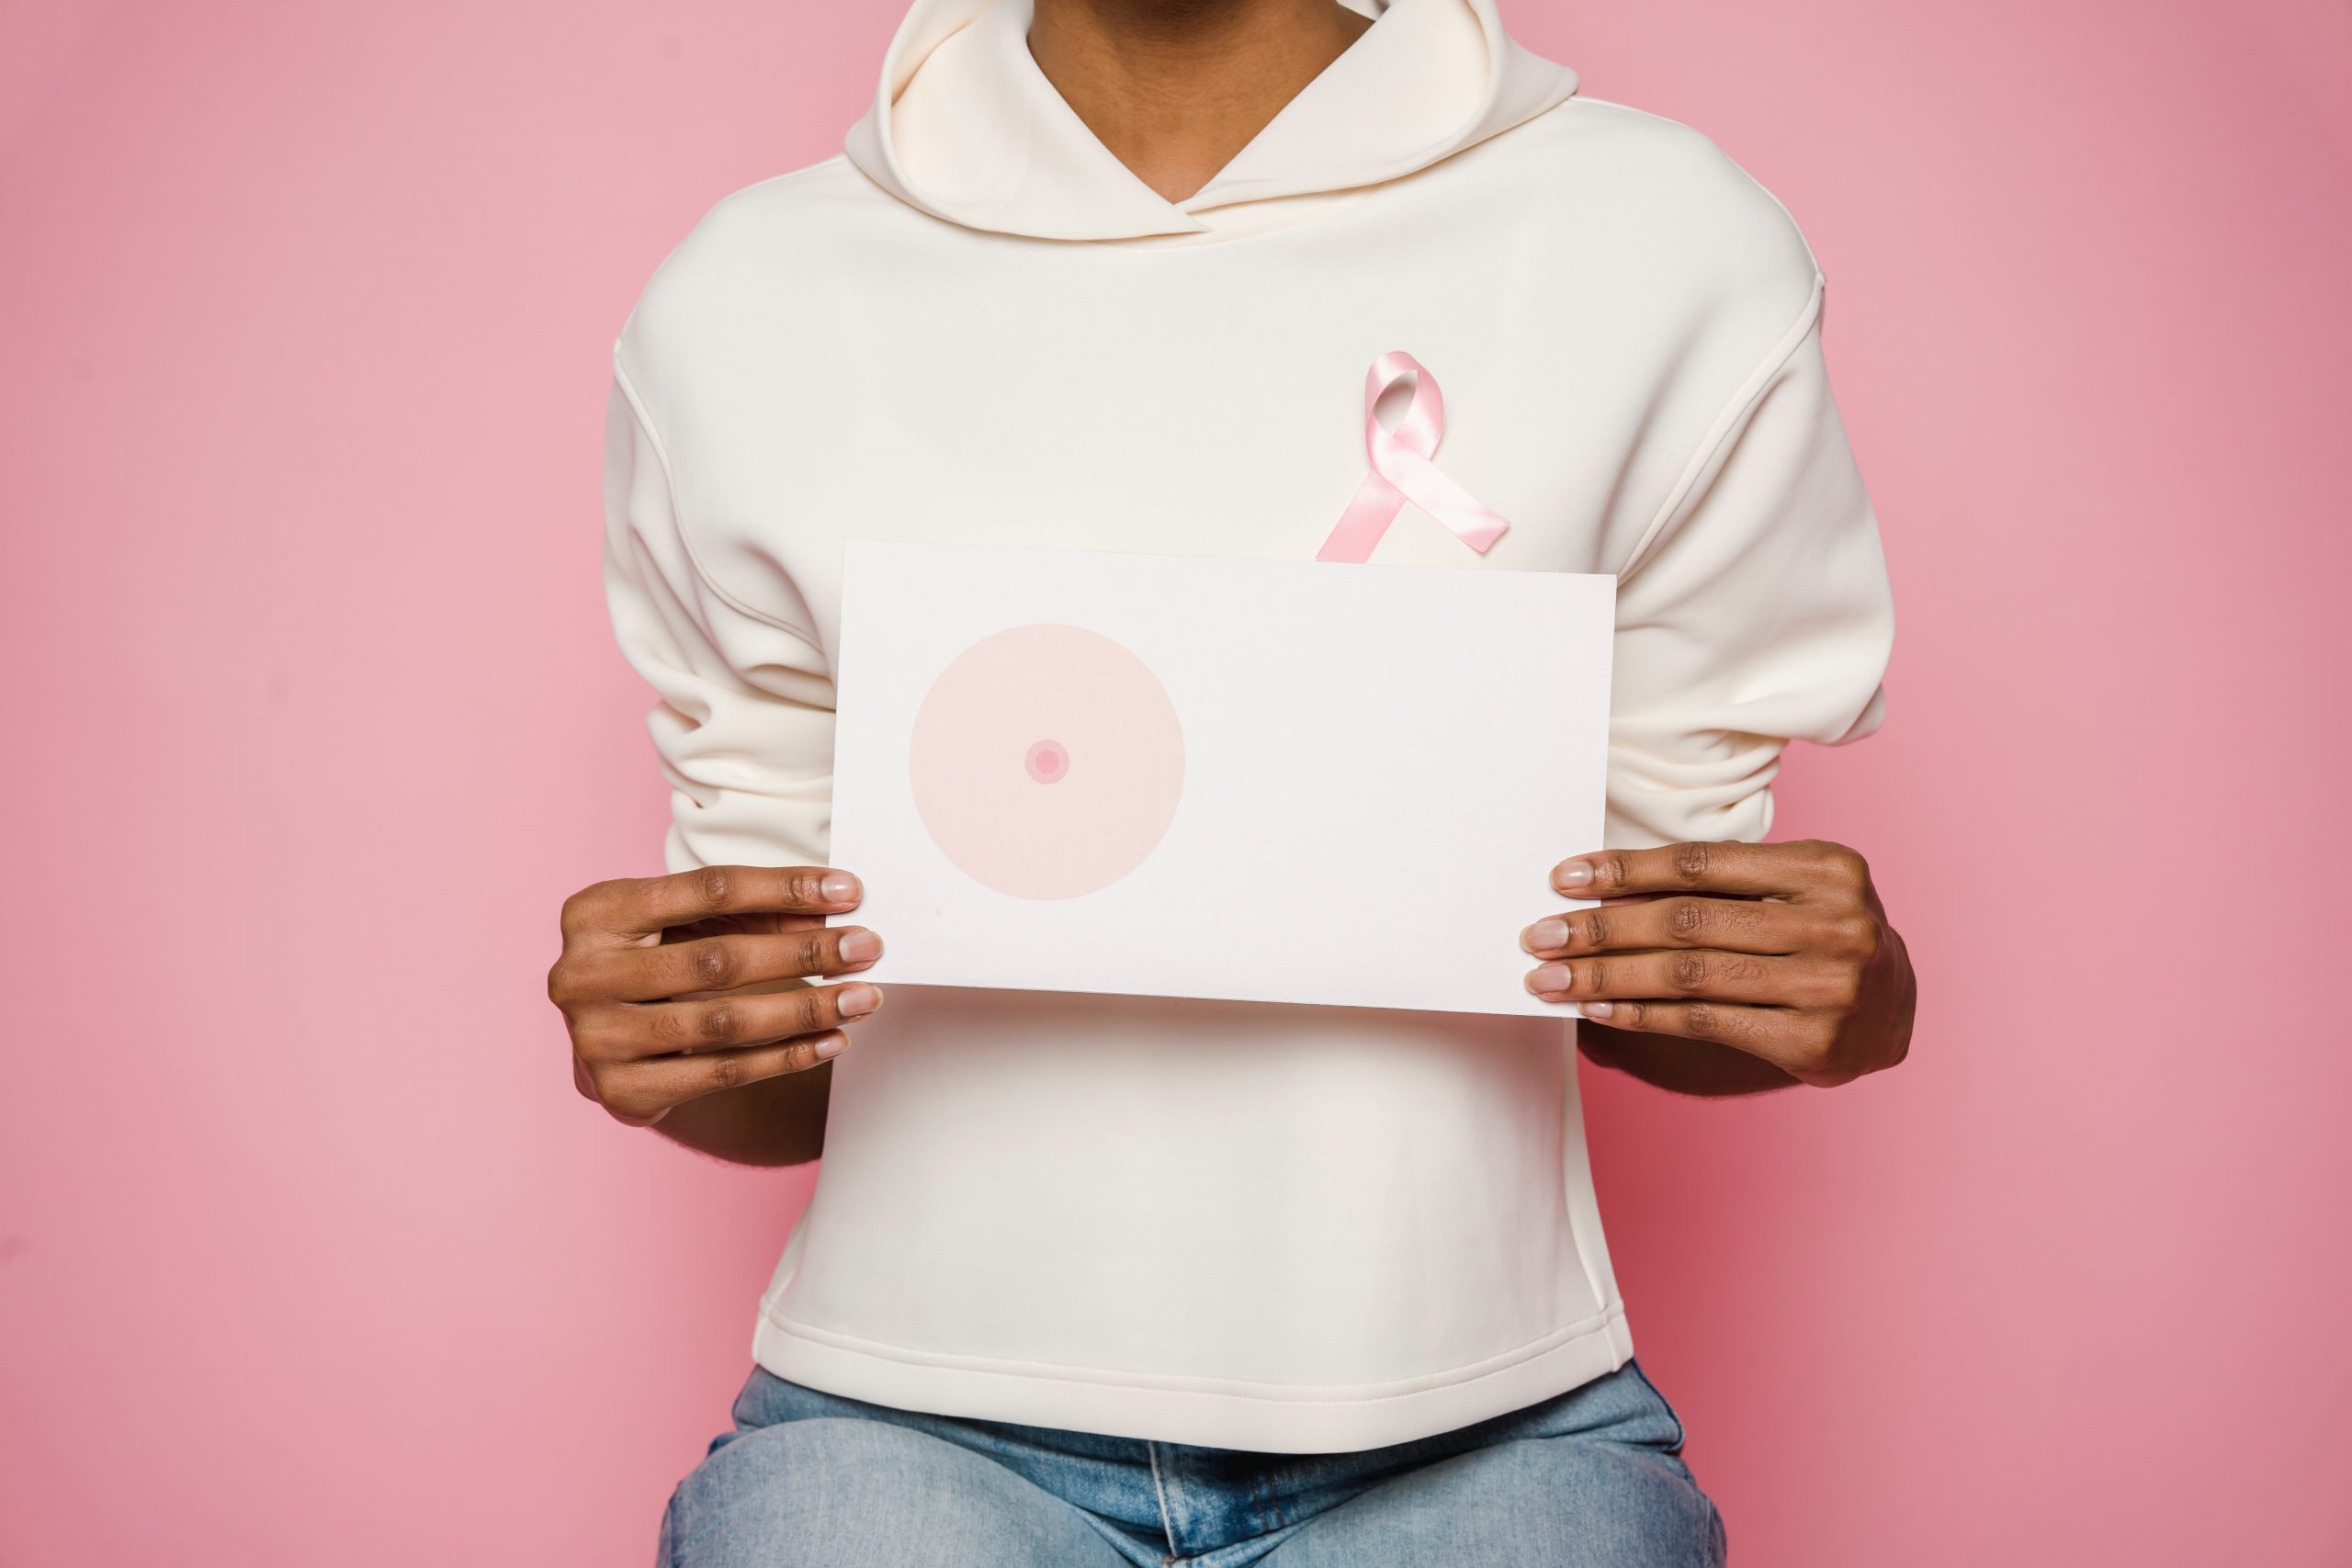 Lanzan convocatoria a fundaciones para representar proyectos contra el cancer de mama